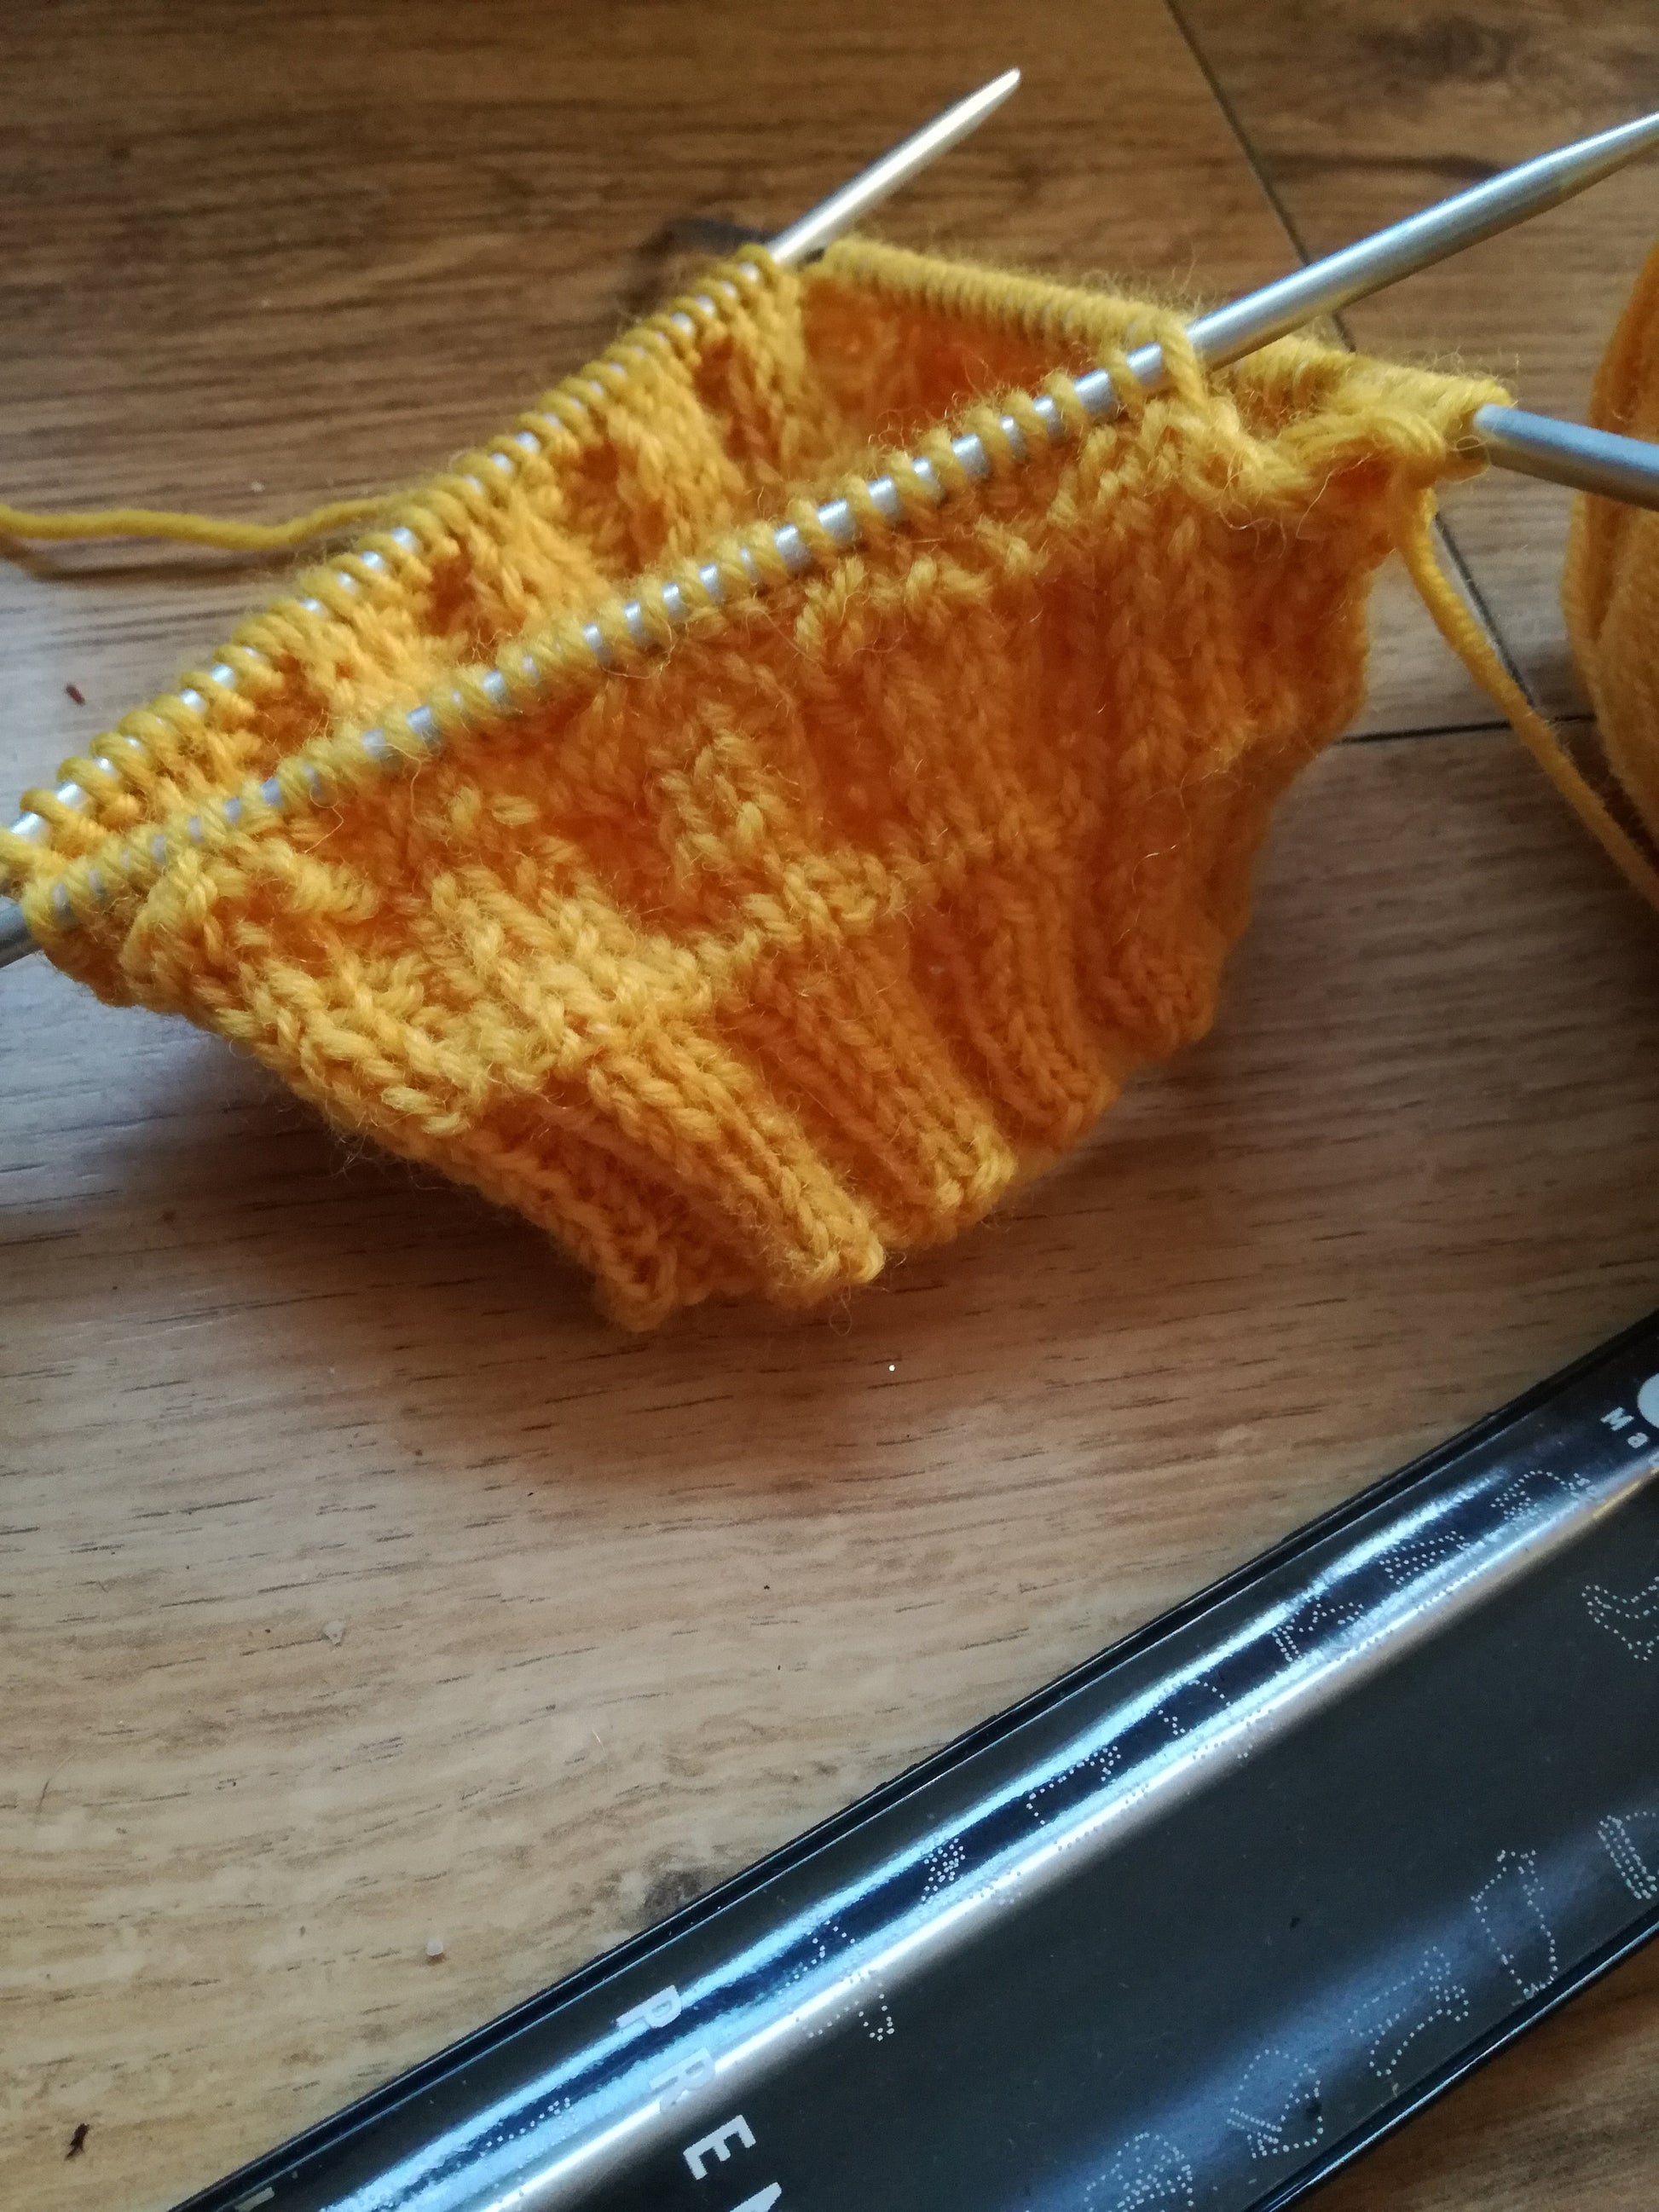 Addi knitting needles on a hat. 